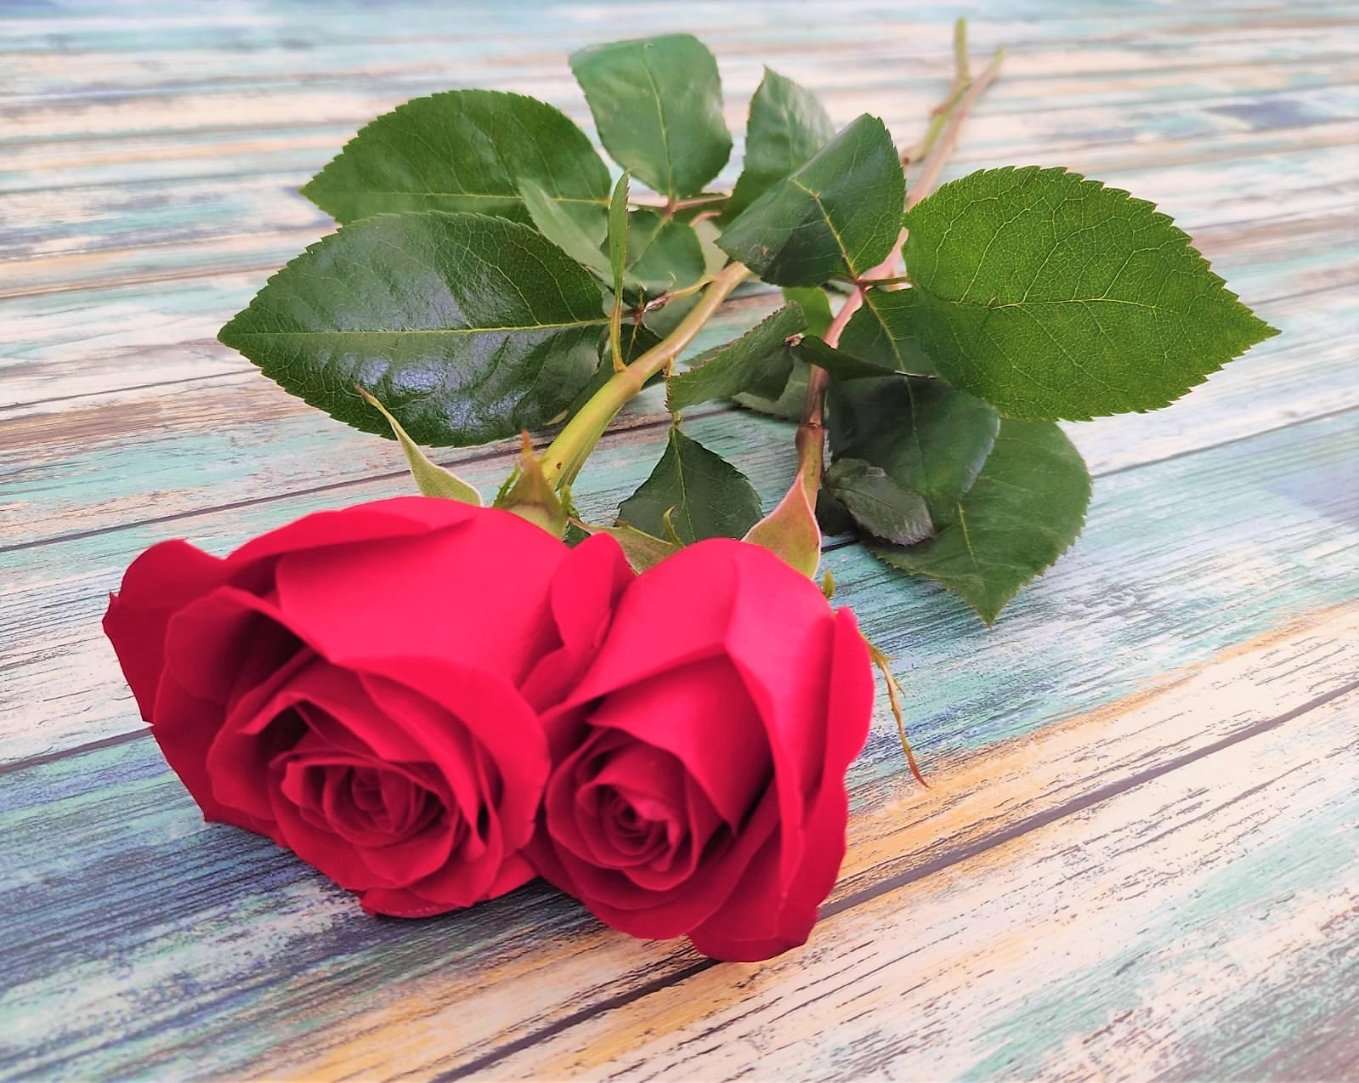 rosa-roja-regalo-romantico.jpg